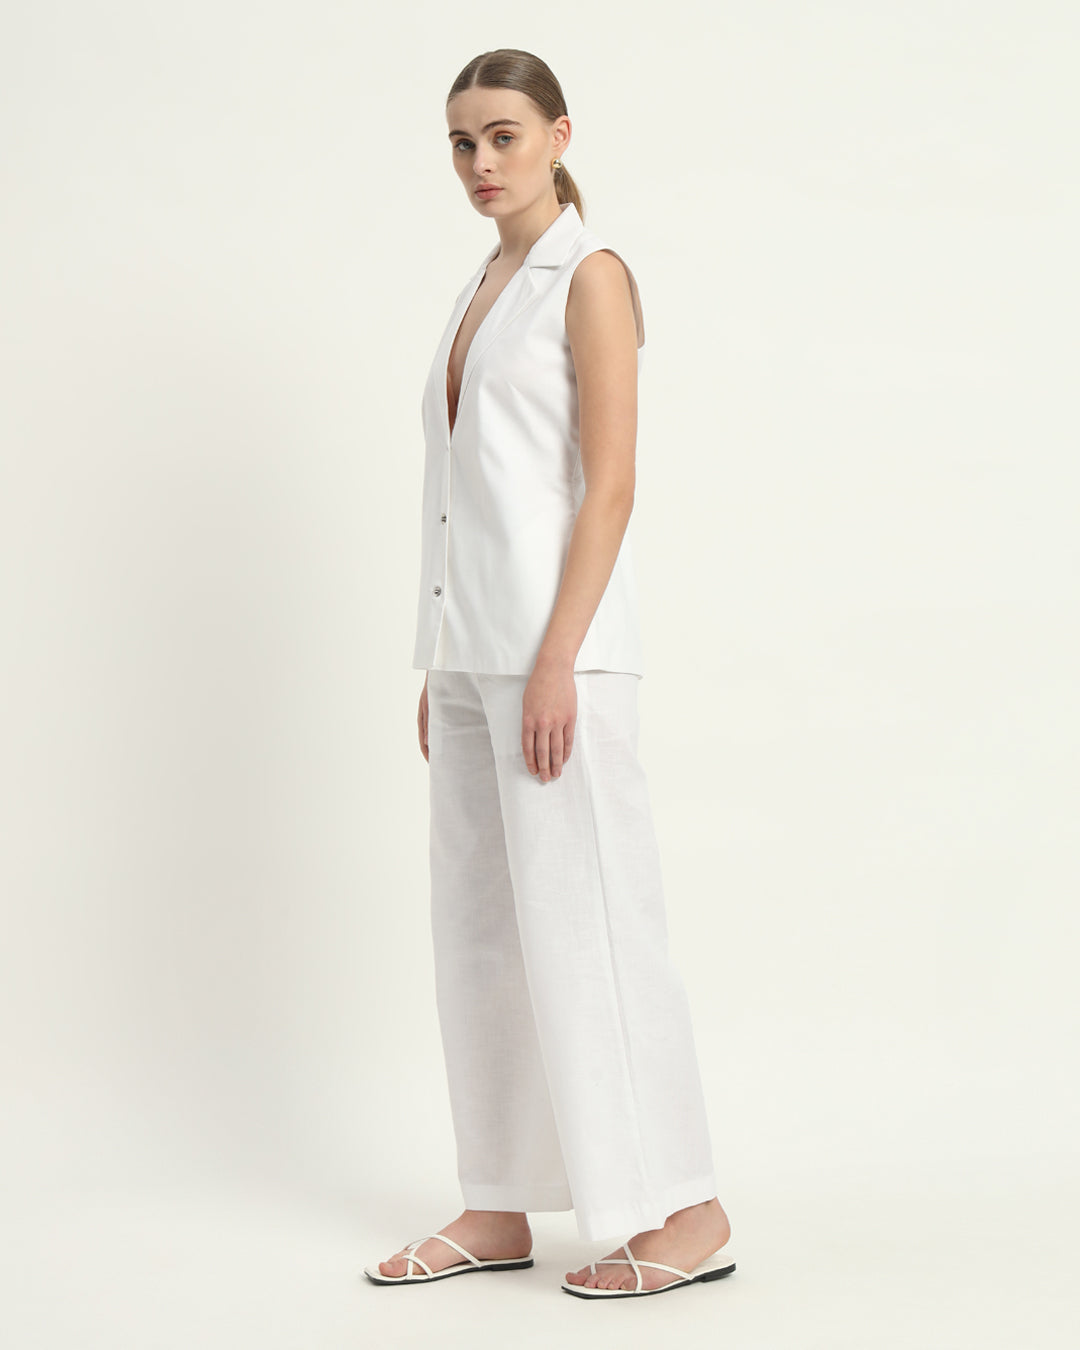 Pants Matching Set- White Linen Elegance Echo V-Neck Blazer